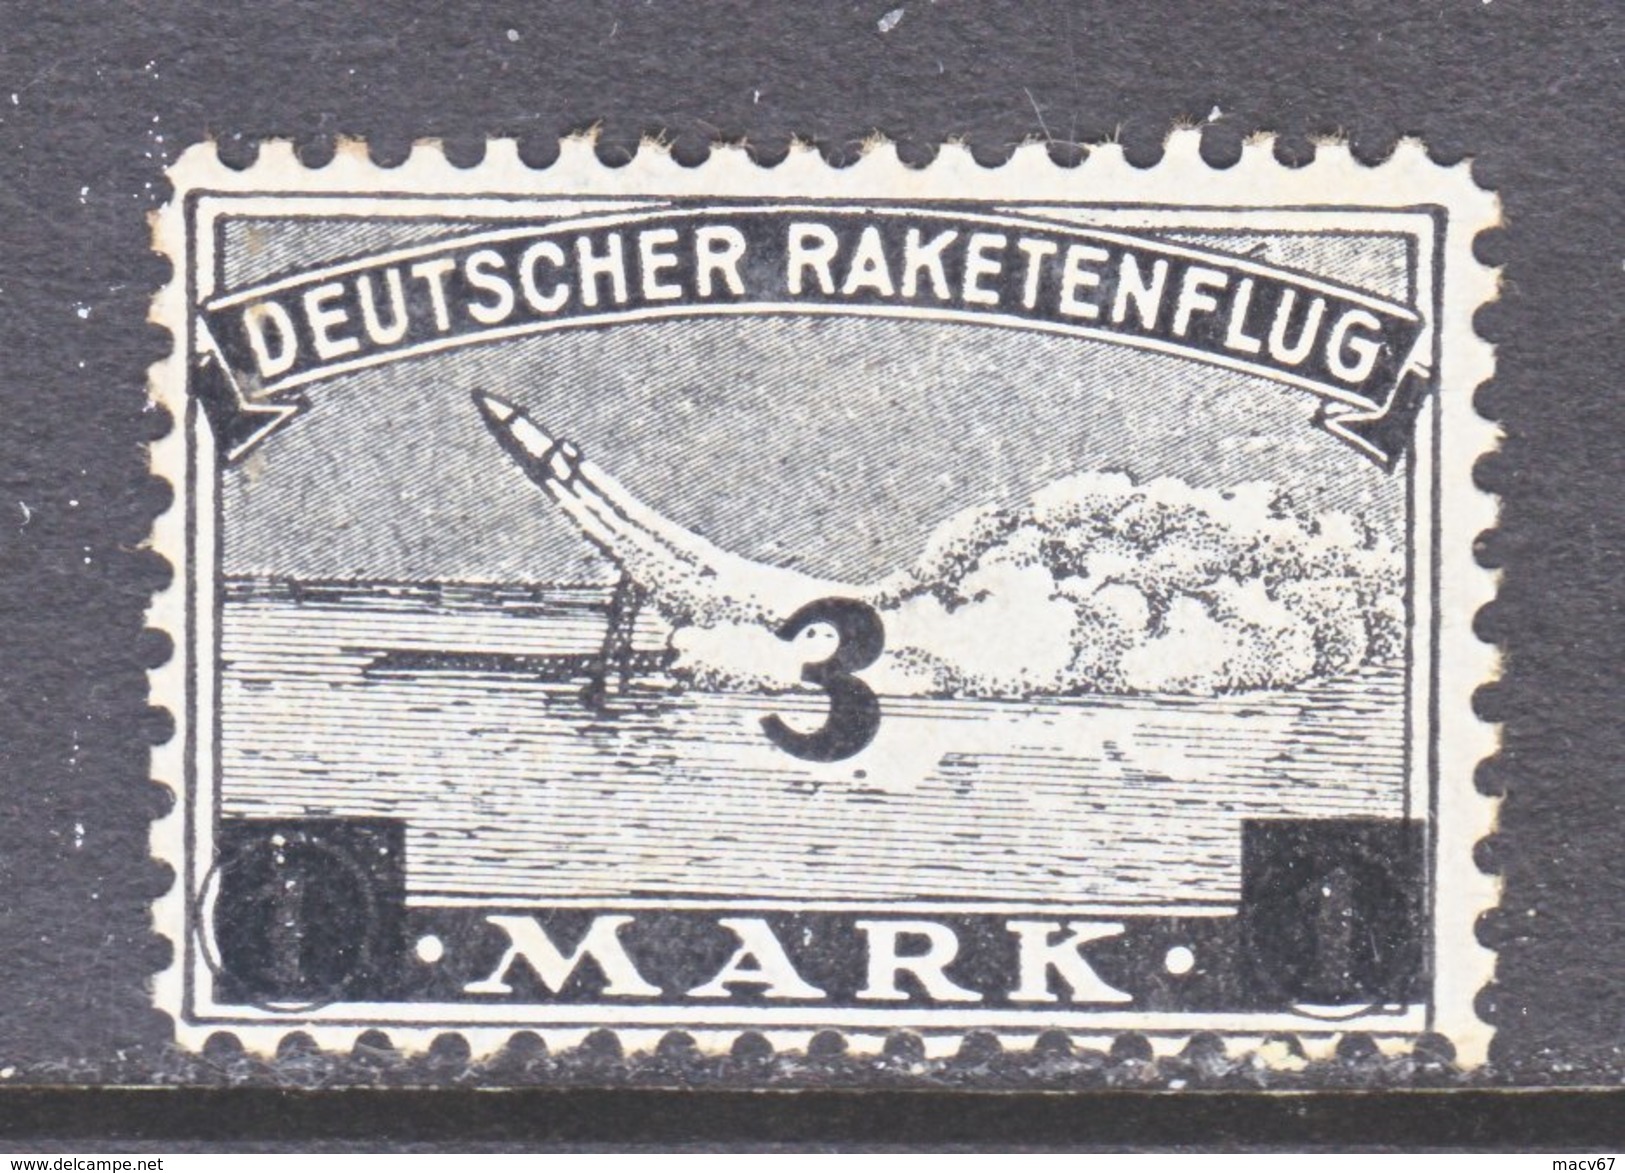 GERMANY  ZUCKER  ROCKET  MAIL  3 B  * - Airmail & Zeppelin